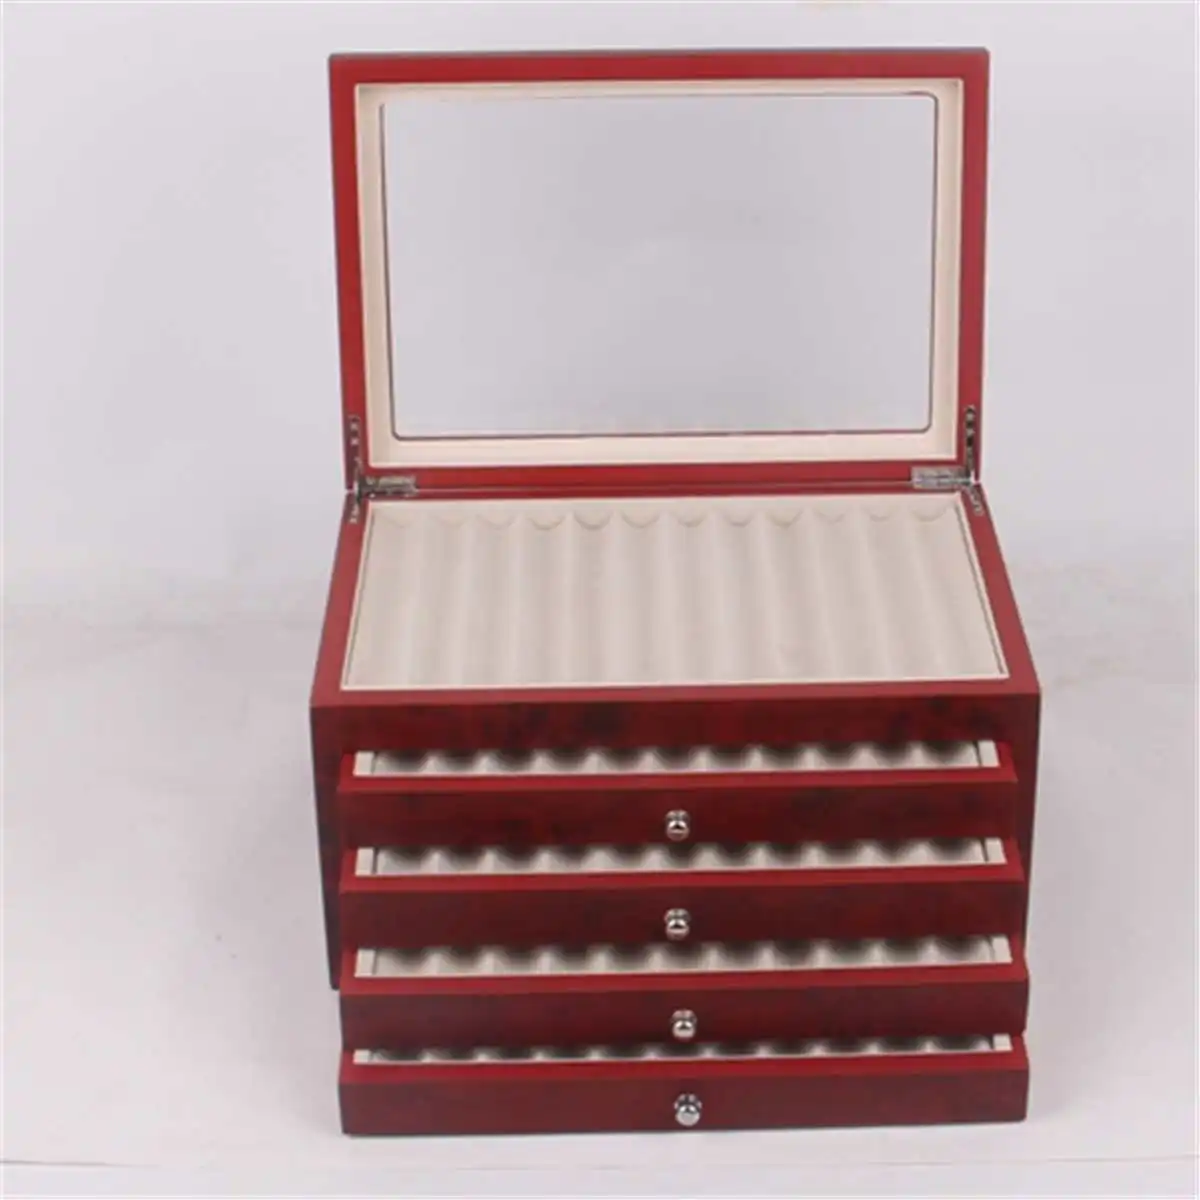 5 Слои деревянная коробка для ручек для хранения коллектор 56 подставка для ручки перьевые выставочный деревянный футляр организатор ящик